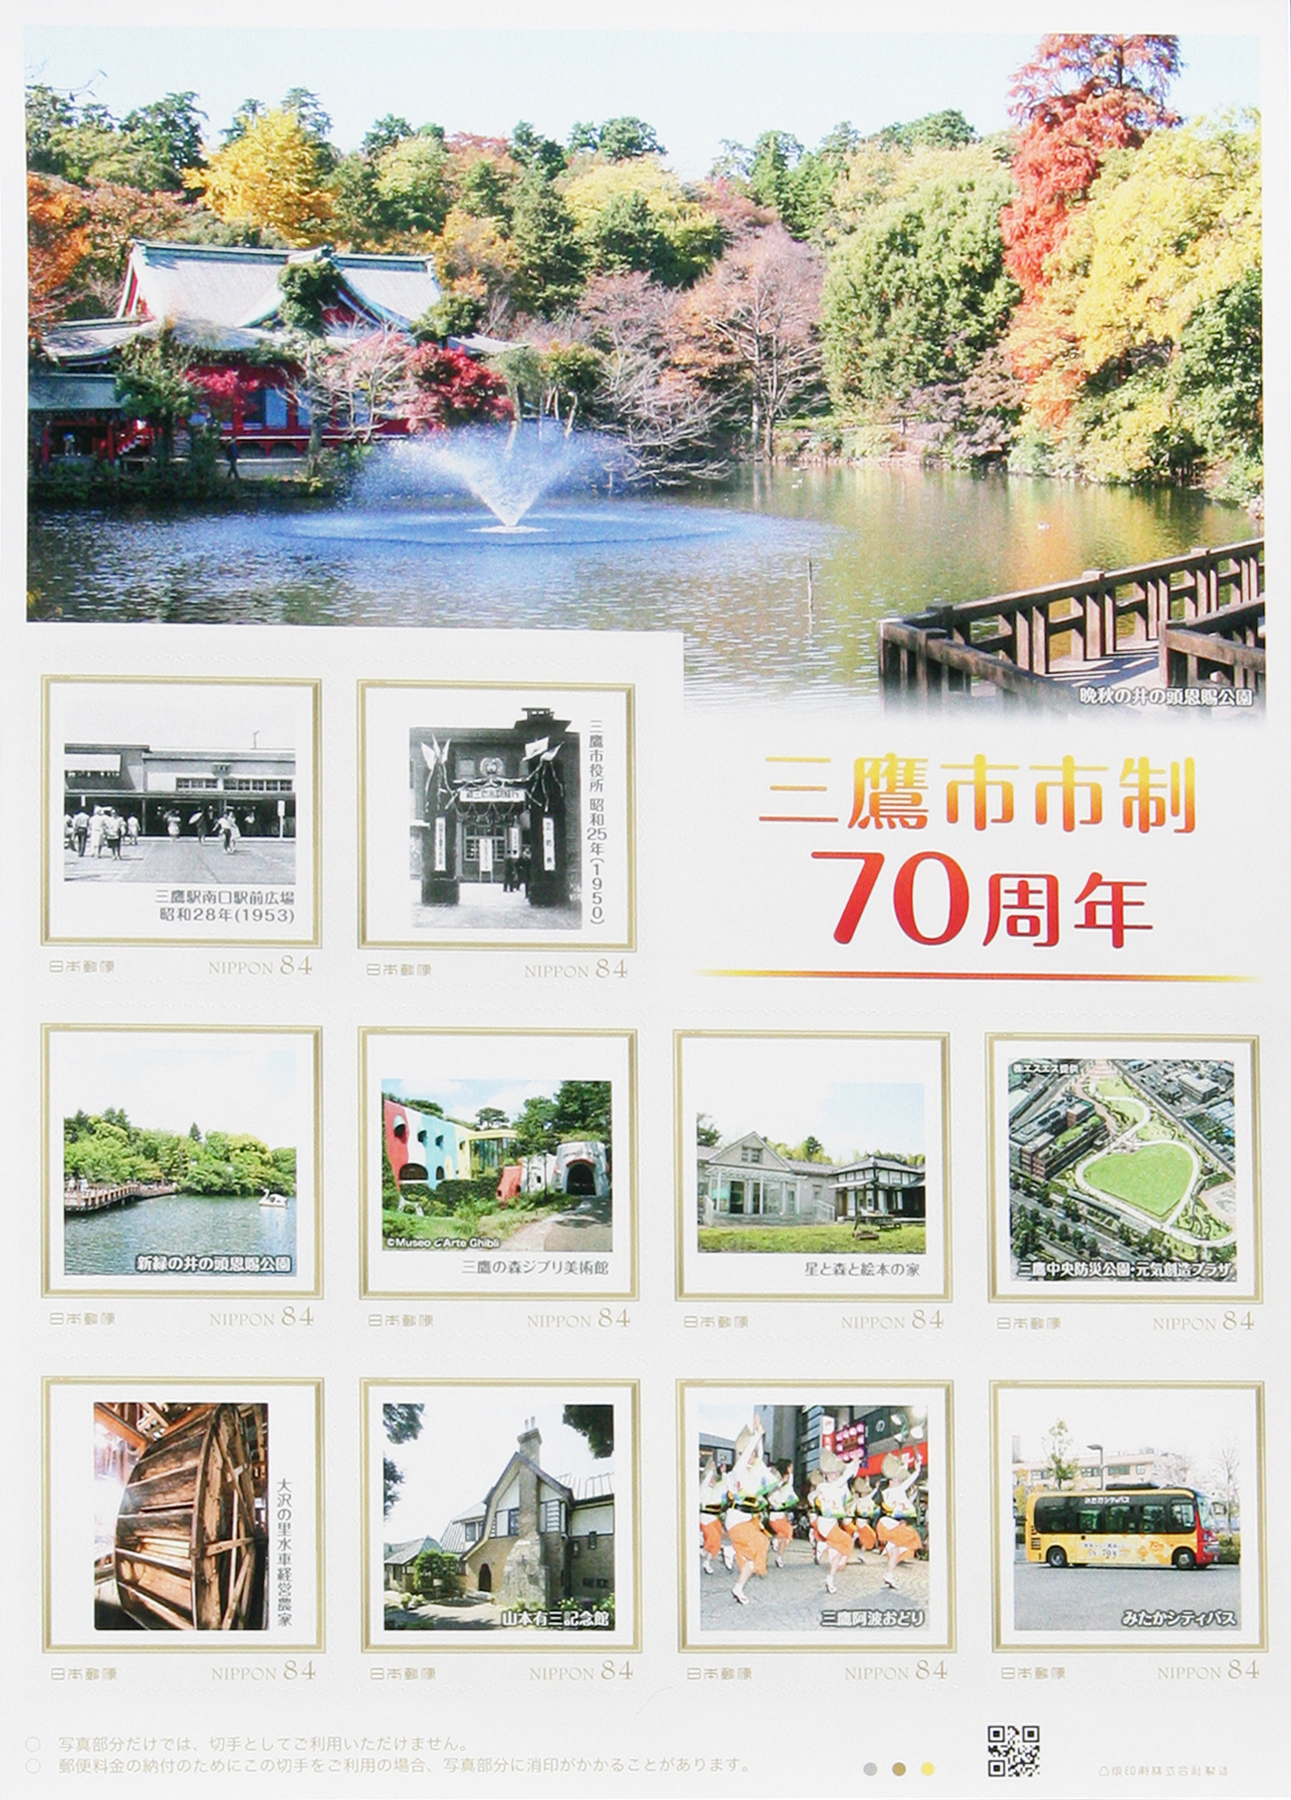 オリジナルフレーム切手「三鷹市市制70周年」